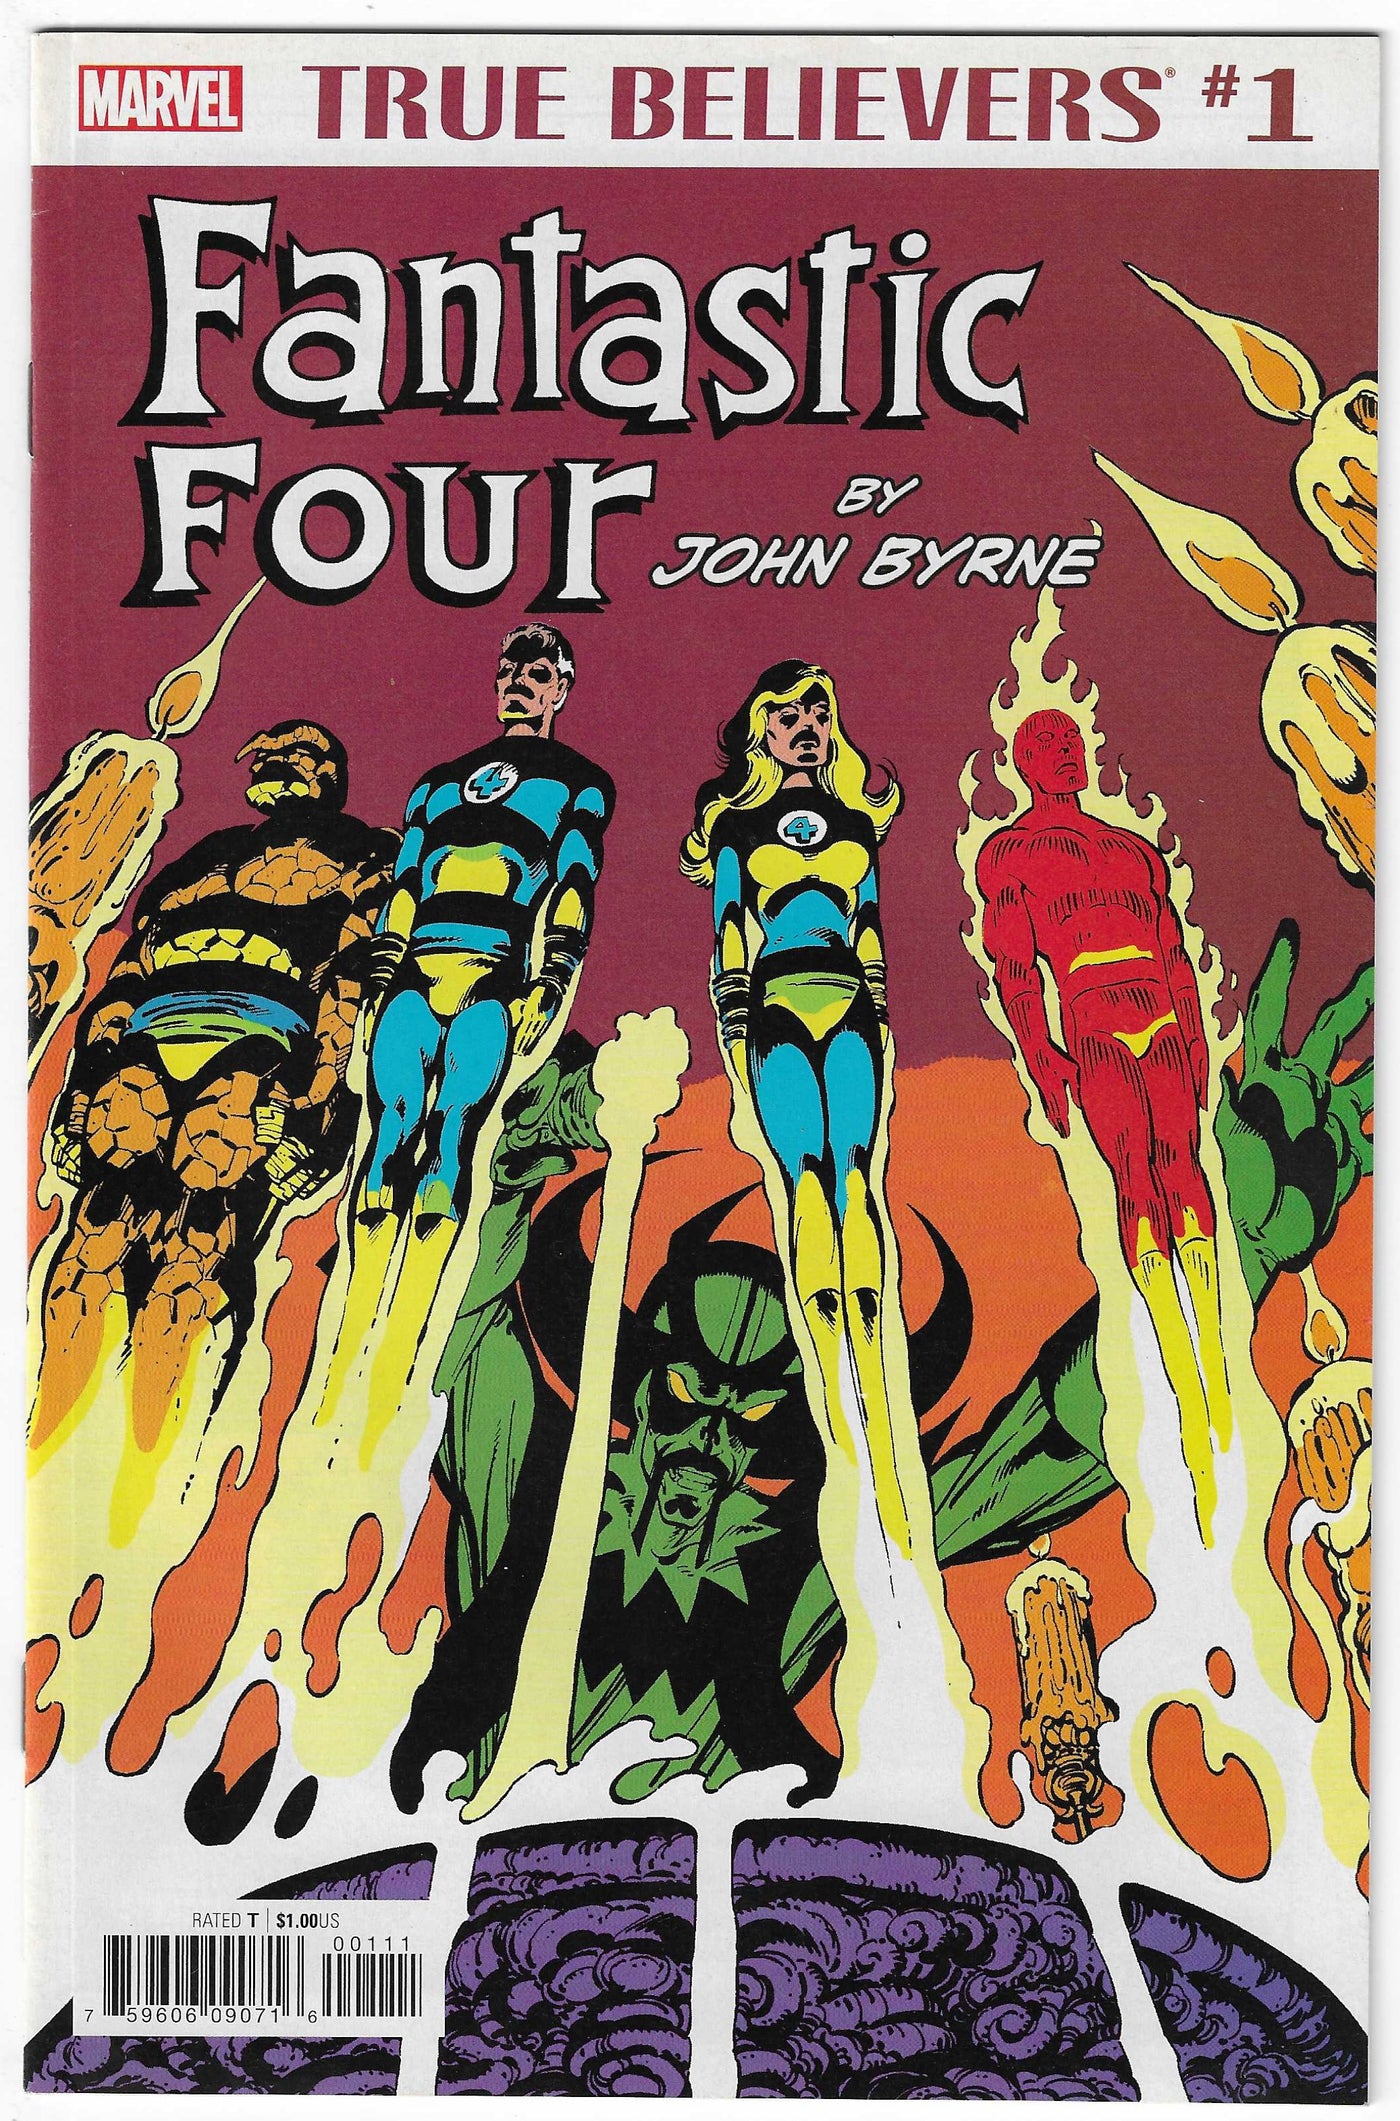 True Believers: Fantastic Four by John Byrne (2018) #1